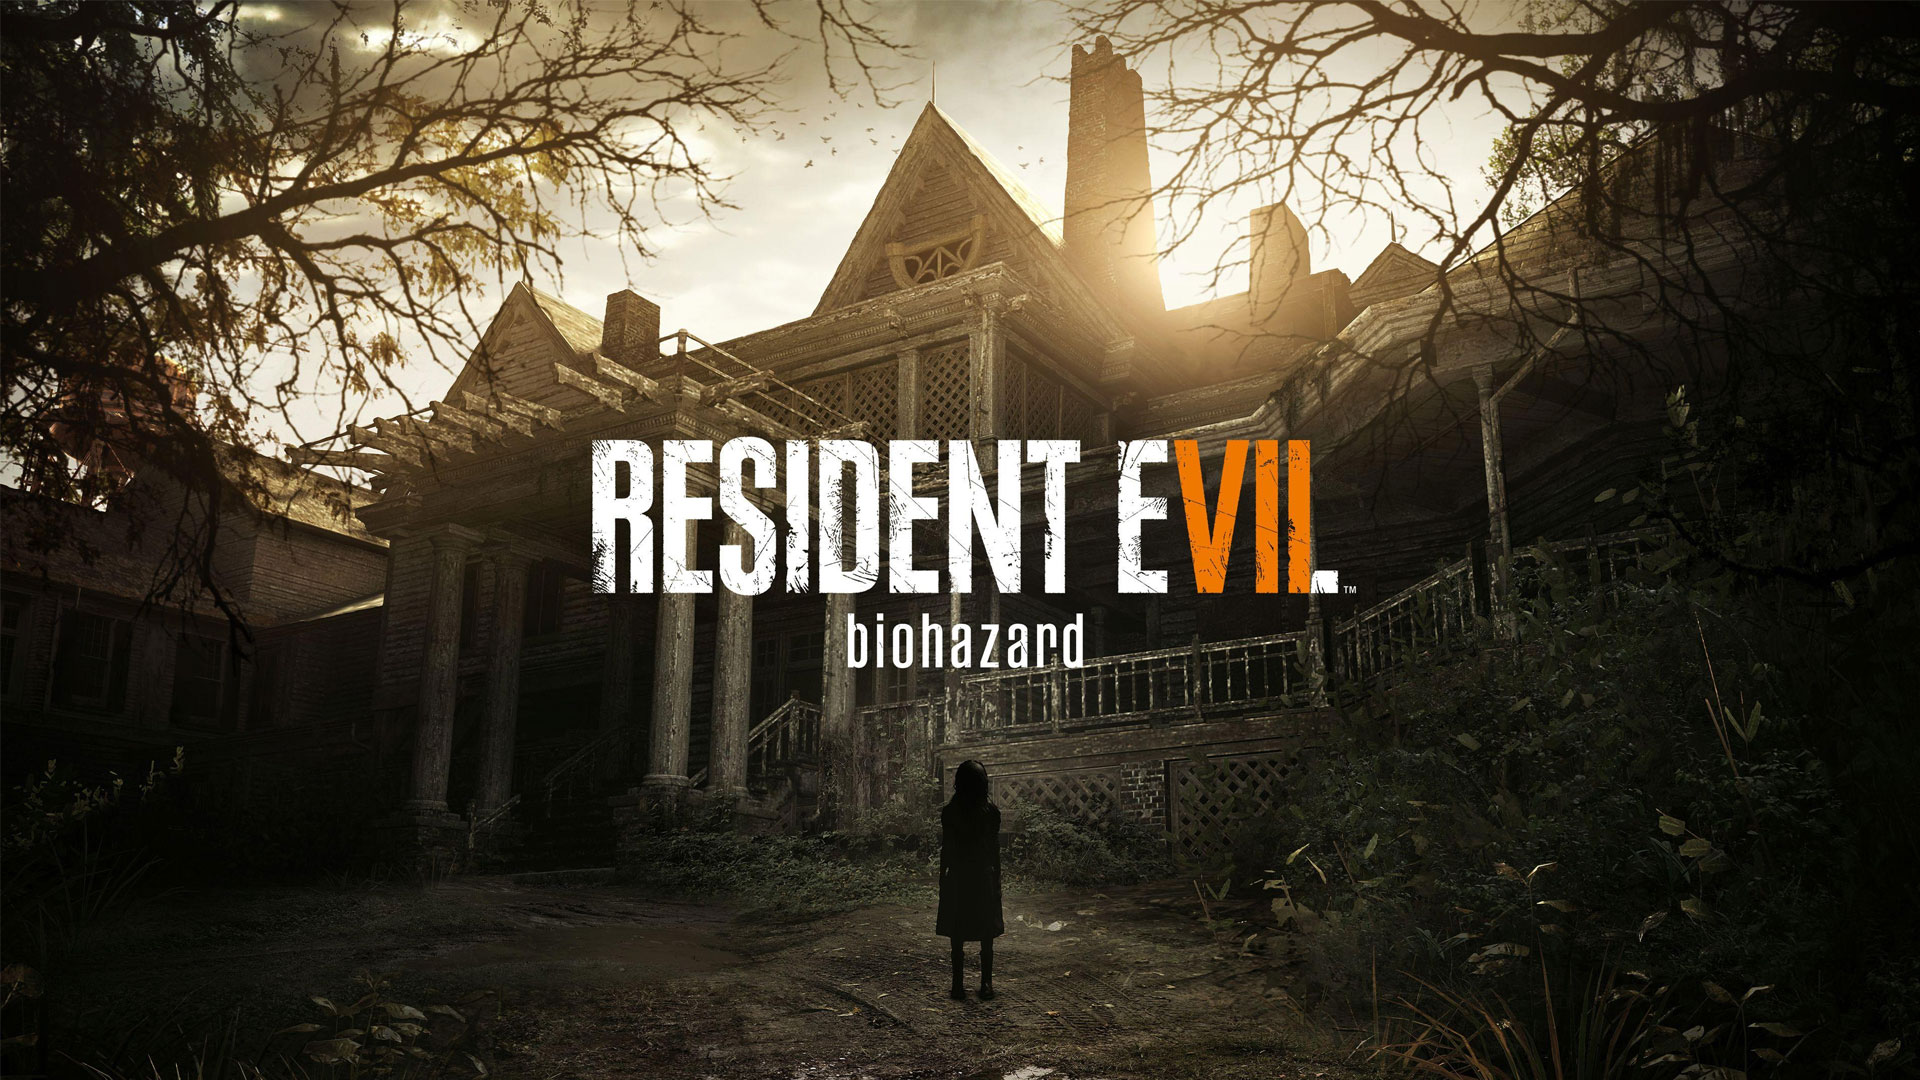 مرور خلاصه داستان بازی Resident Evil 7 با انتشار تریلری جدید